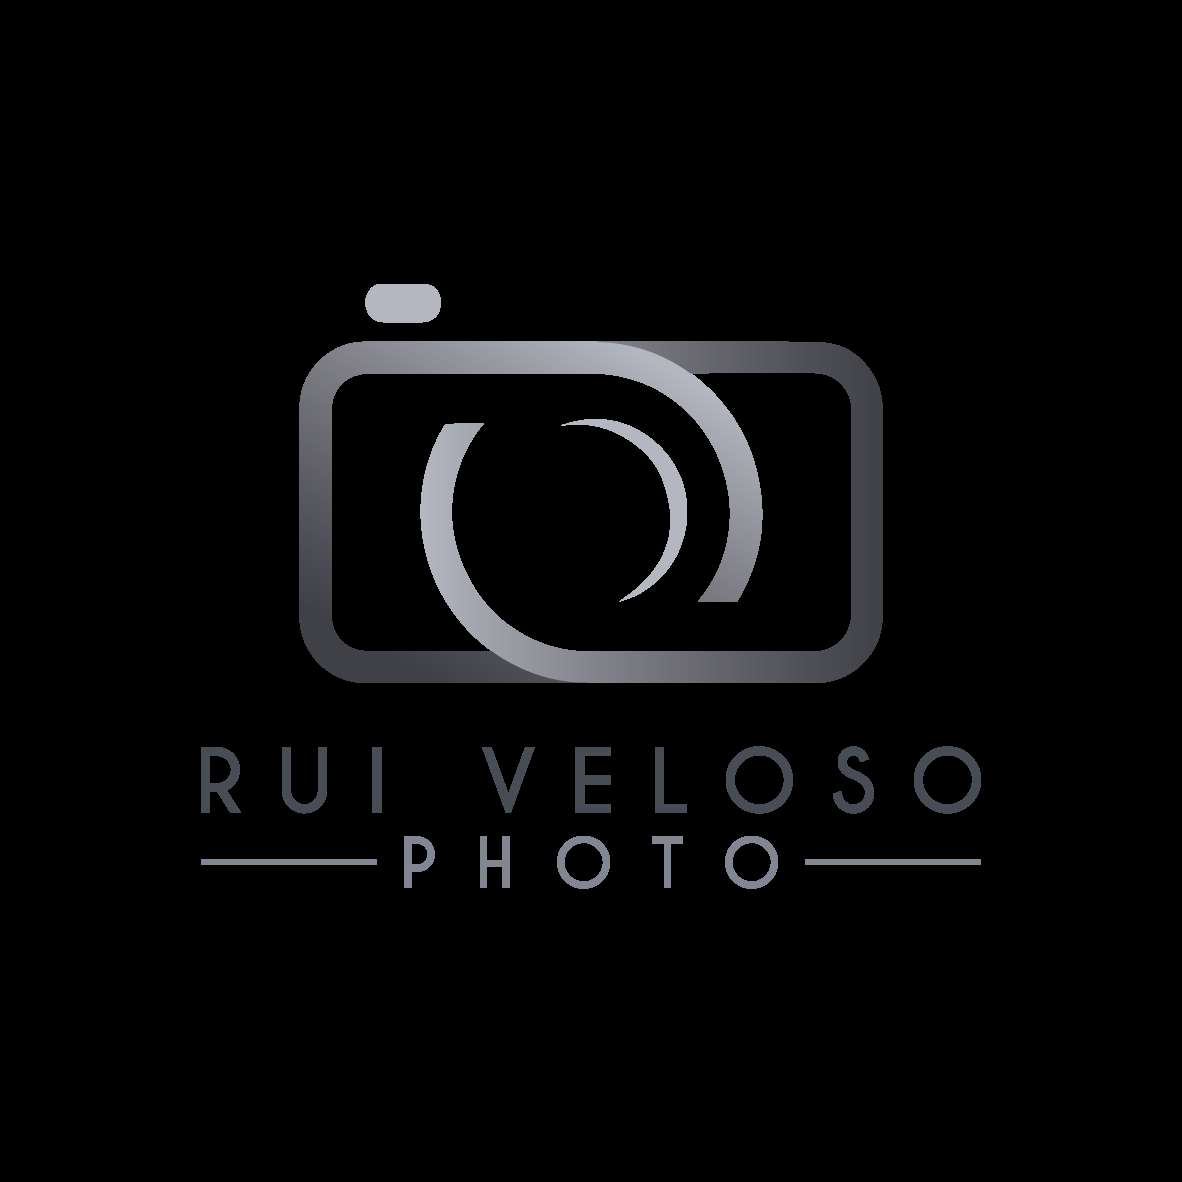 Rui Veloso Photo - Vila Franca de Xira - Fotógrafo